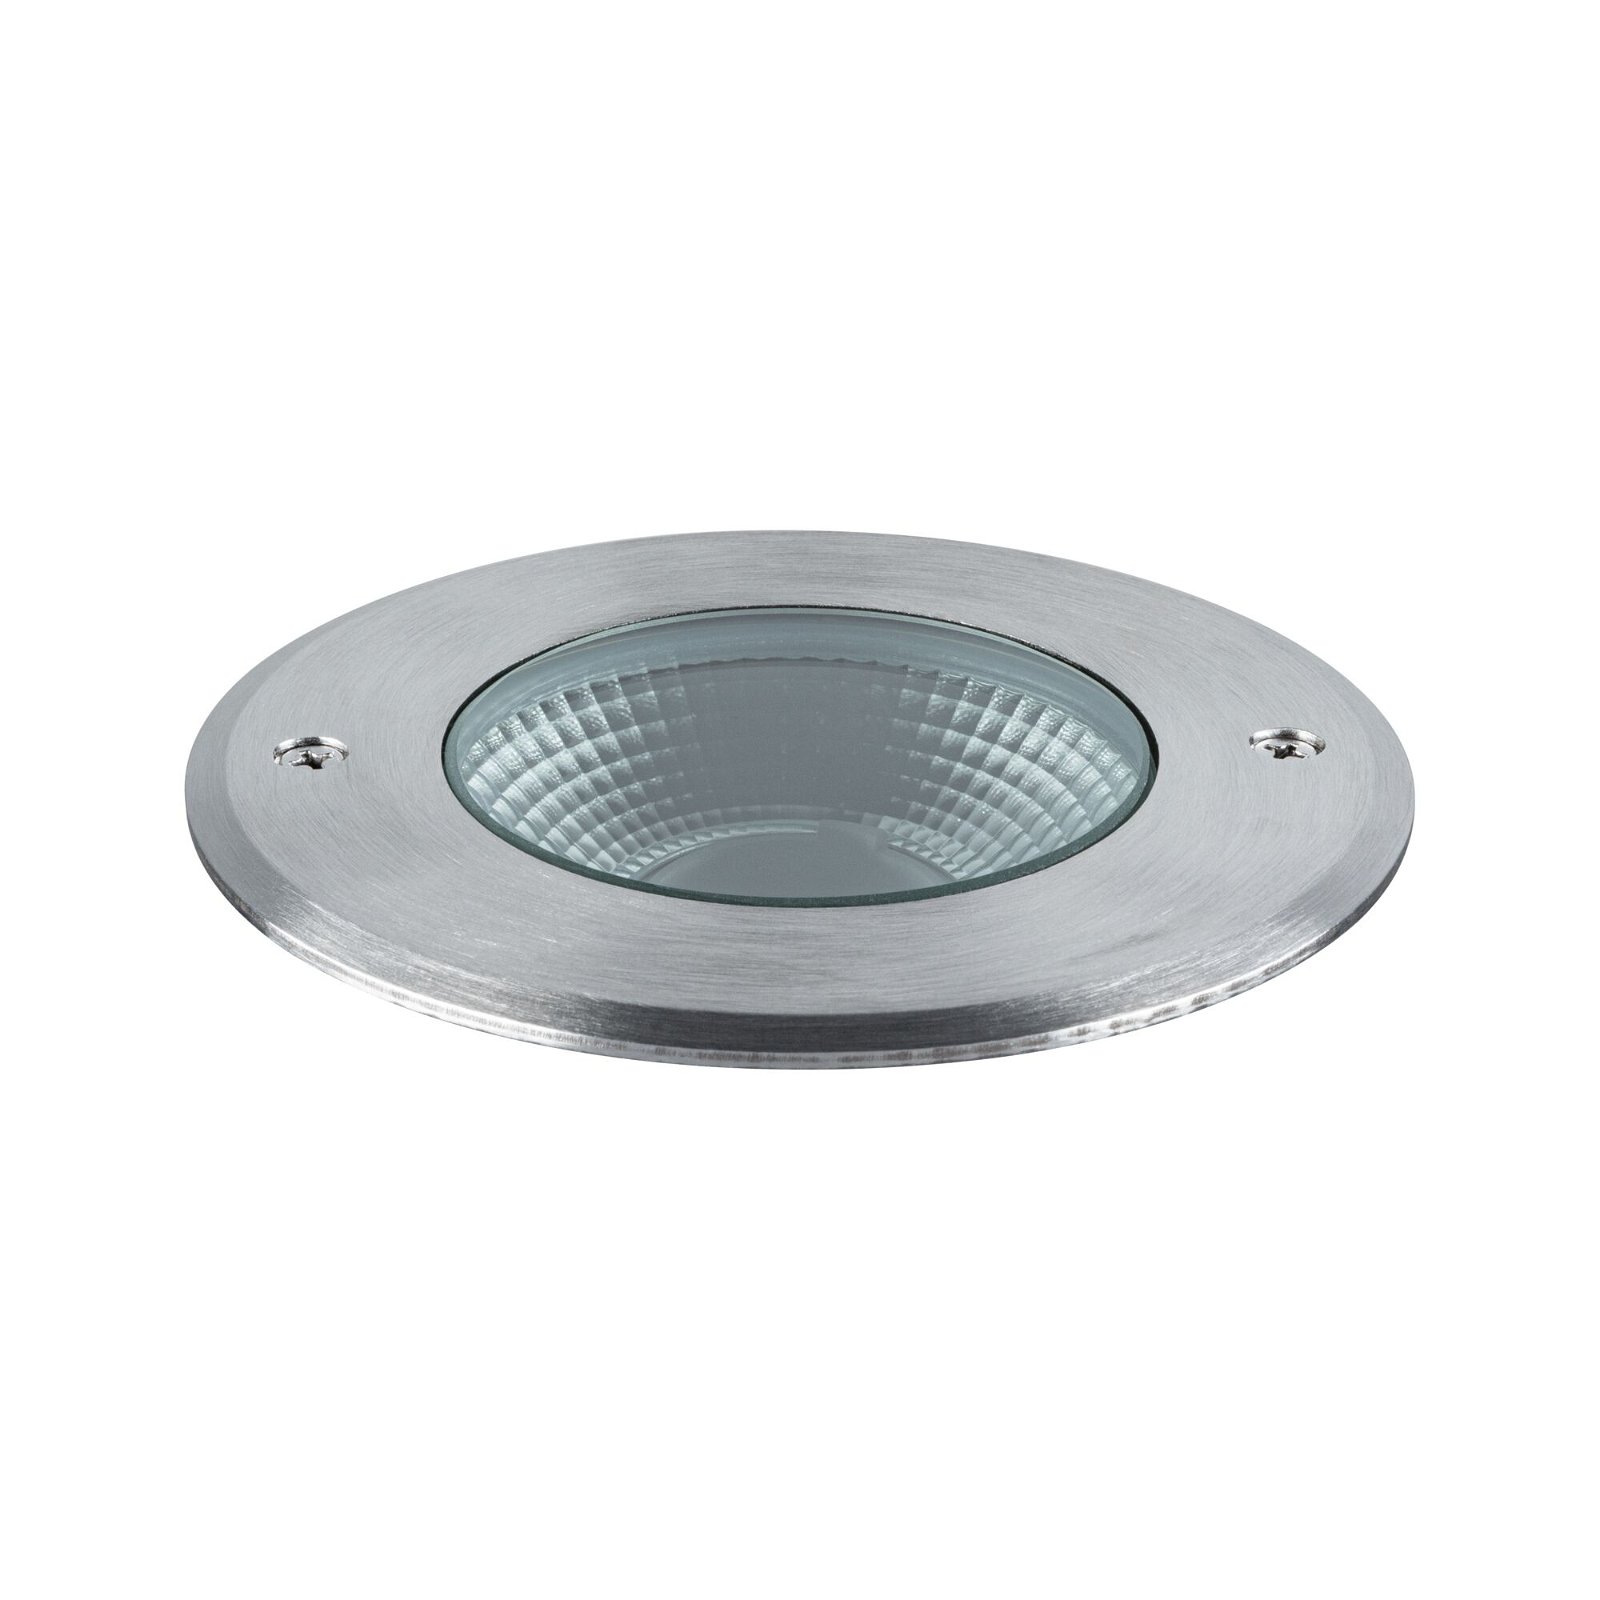 LED Recessed floor luminaire Vanea seawater resistant IP67 round 100mm 3000K 3,5W 160lm 230V 93° Aluminium Aluminium